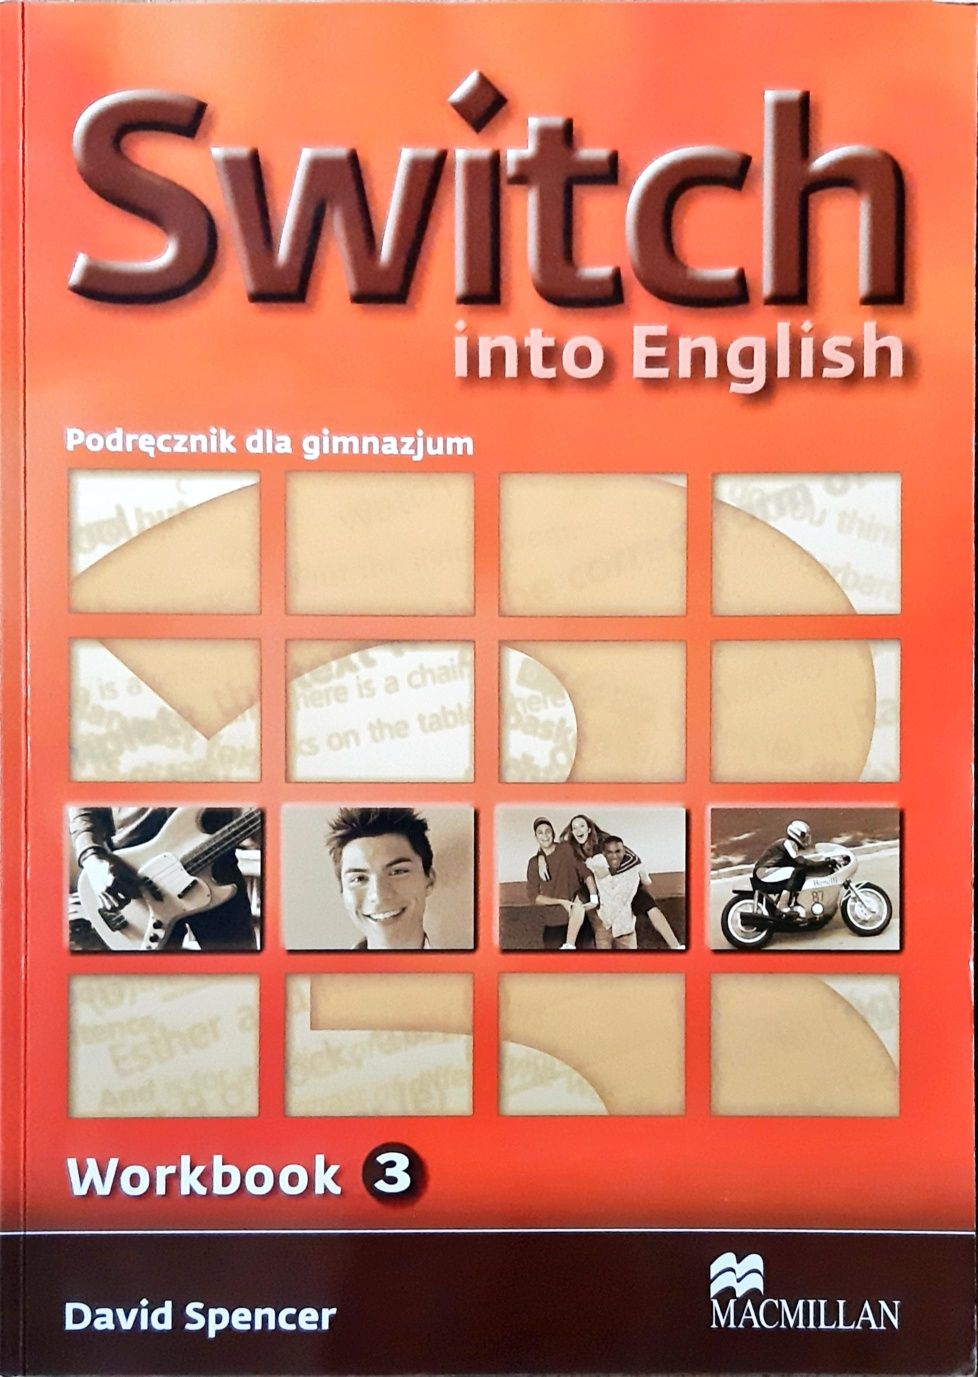 Switch into English - podręcznik dla gimnazjum - Workbook 3